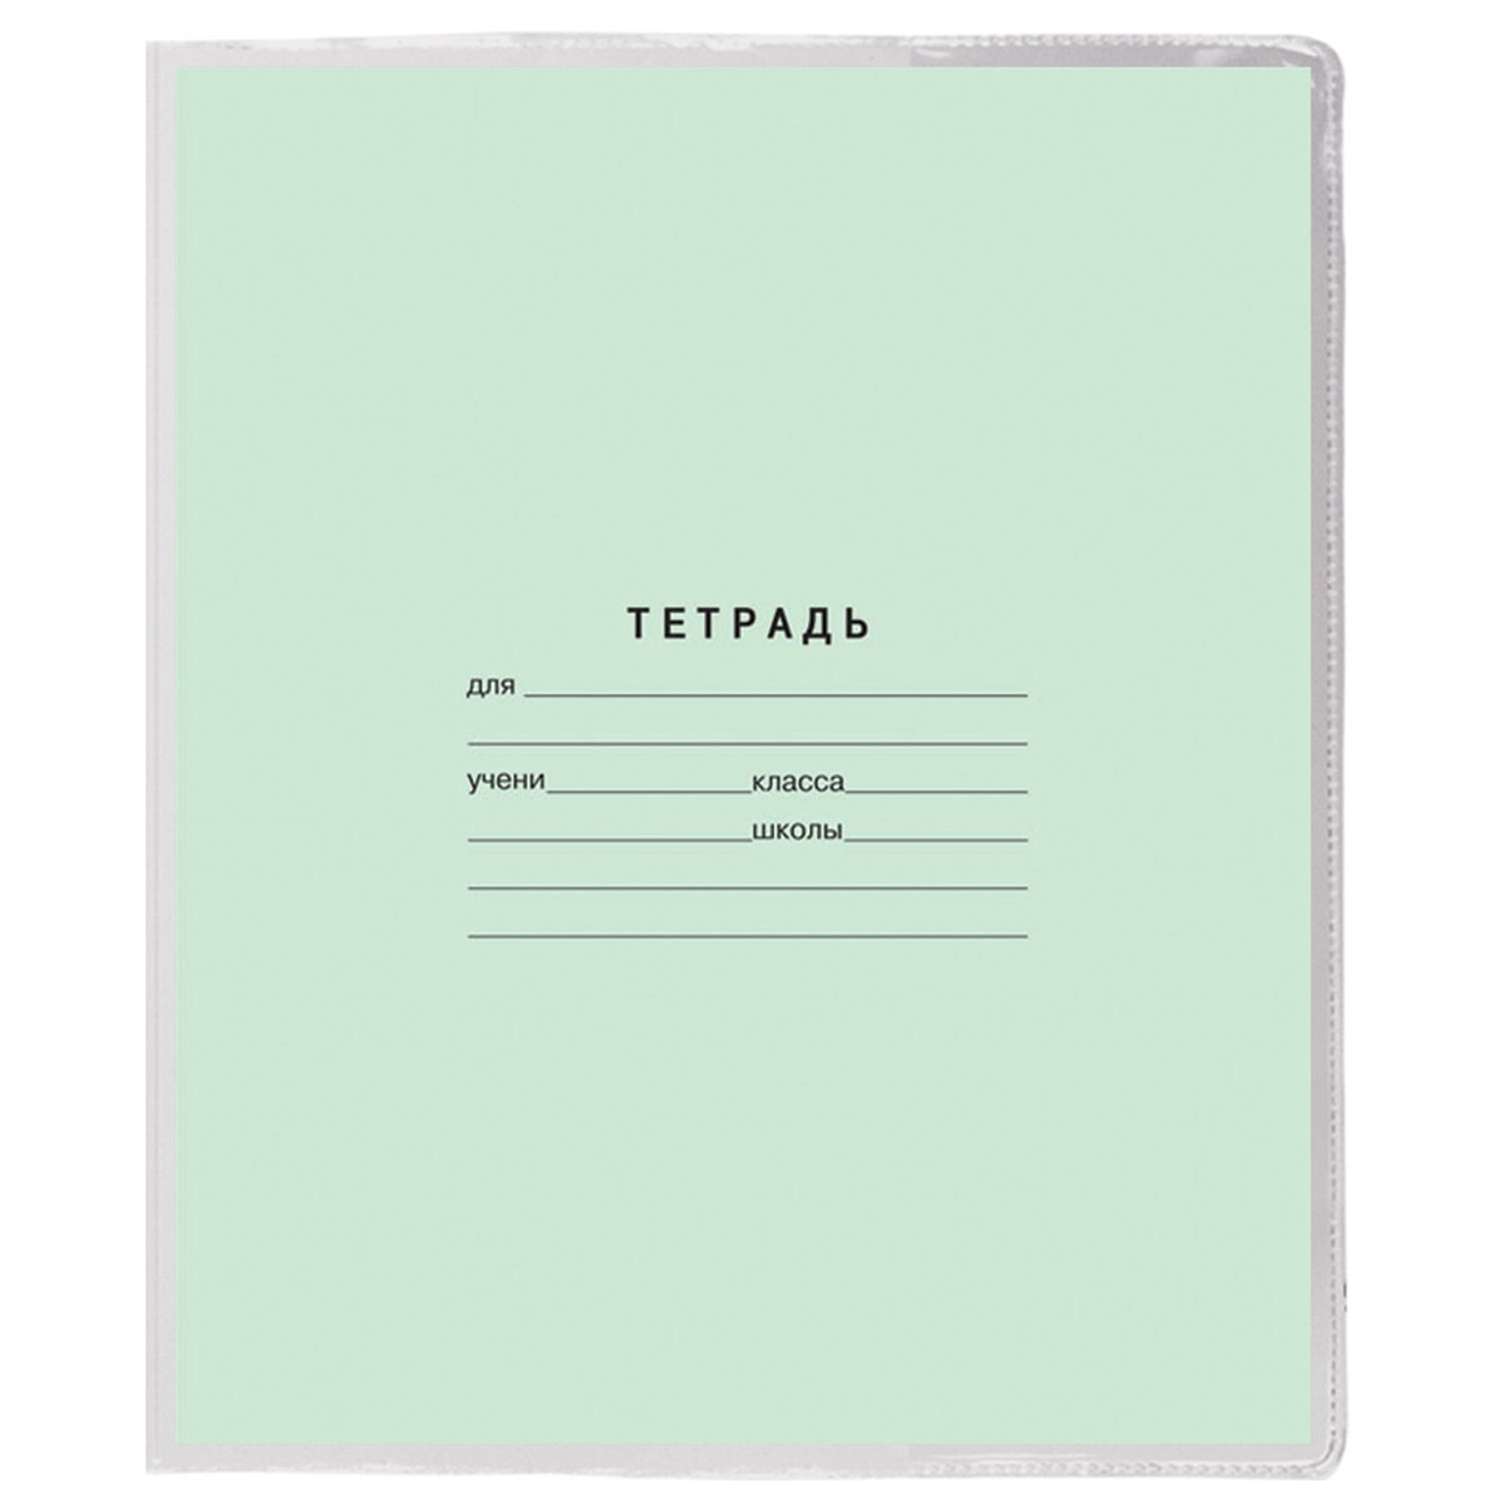 Обложки Пифагор для тетрадей и дневника 10 шт. прозрачные - фото 9